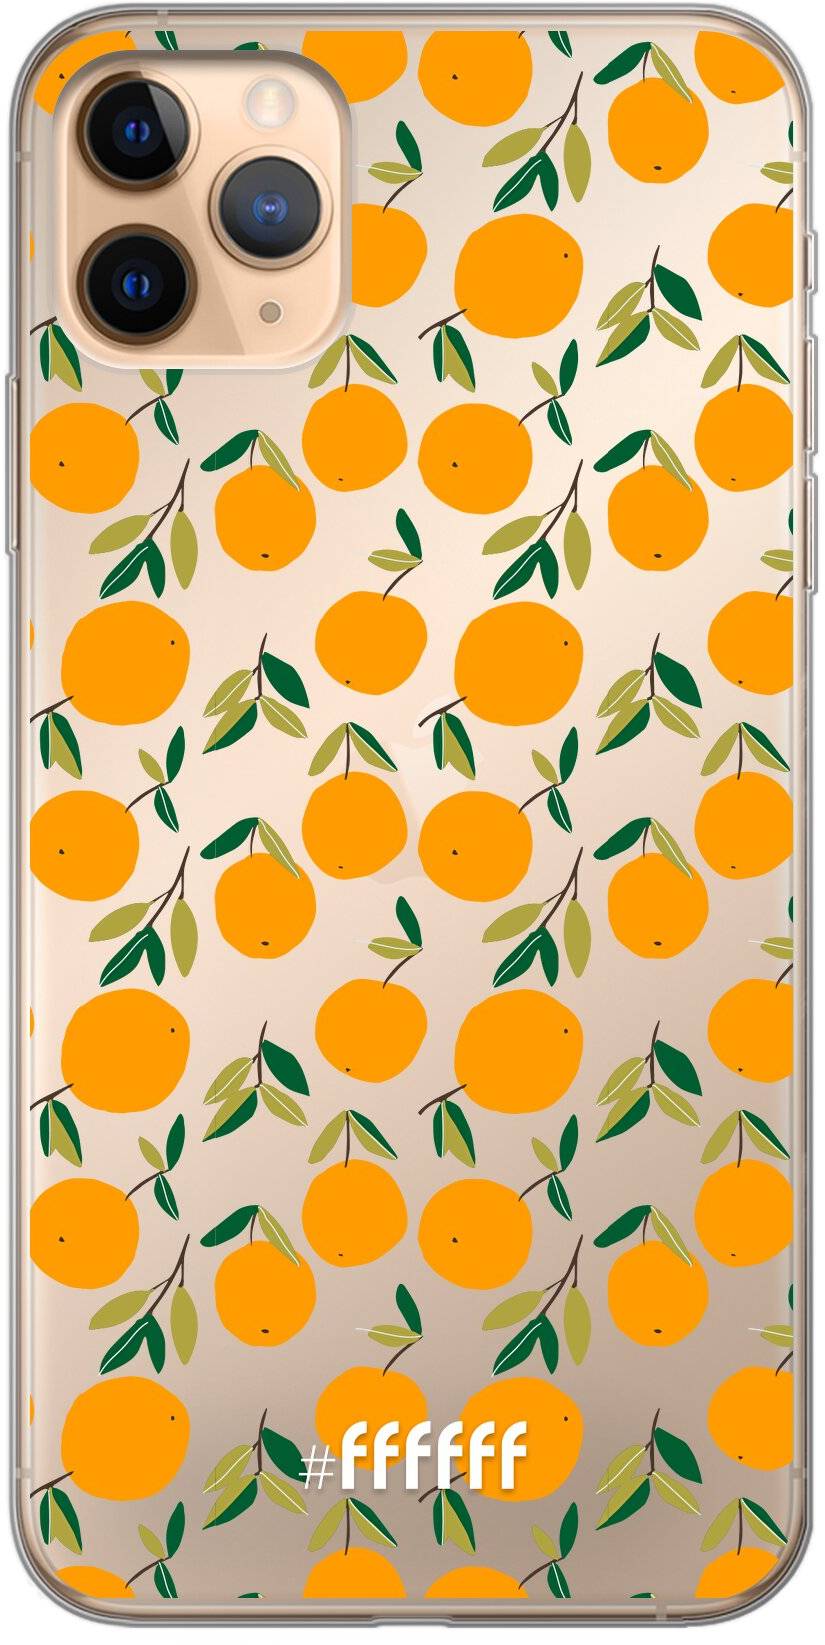 Oranges iPhone 11 Pro Max